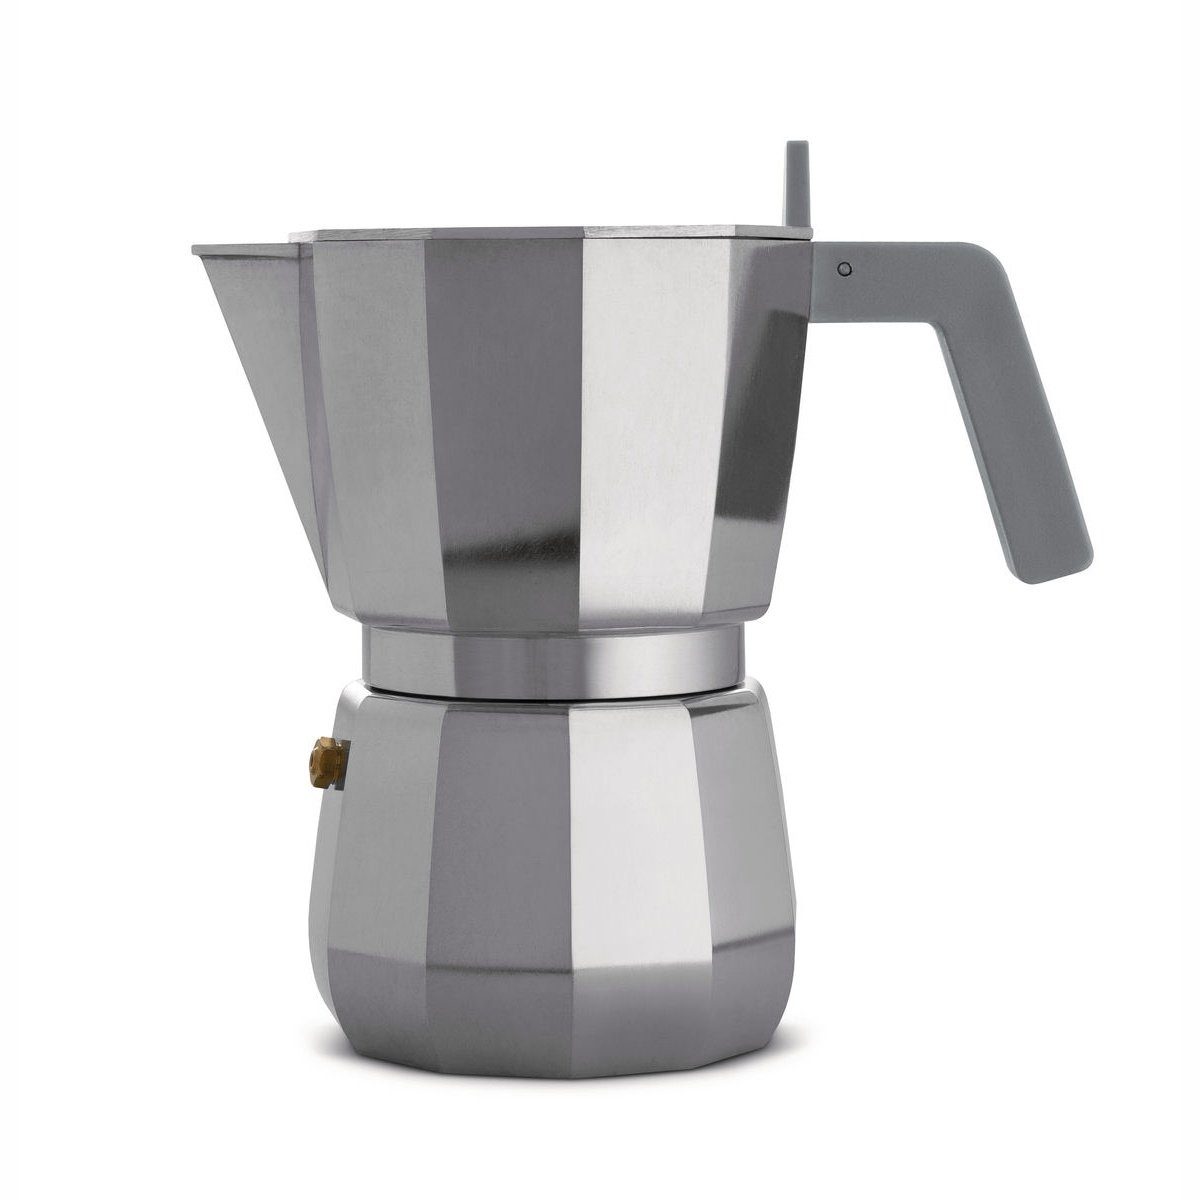 MOKA für Induktion Nicht geeignet 0.07l 1, modern Alessi Espressokocher Espressokocher Kaffeekanne,